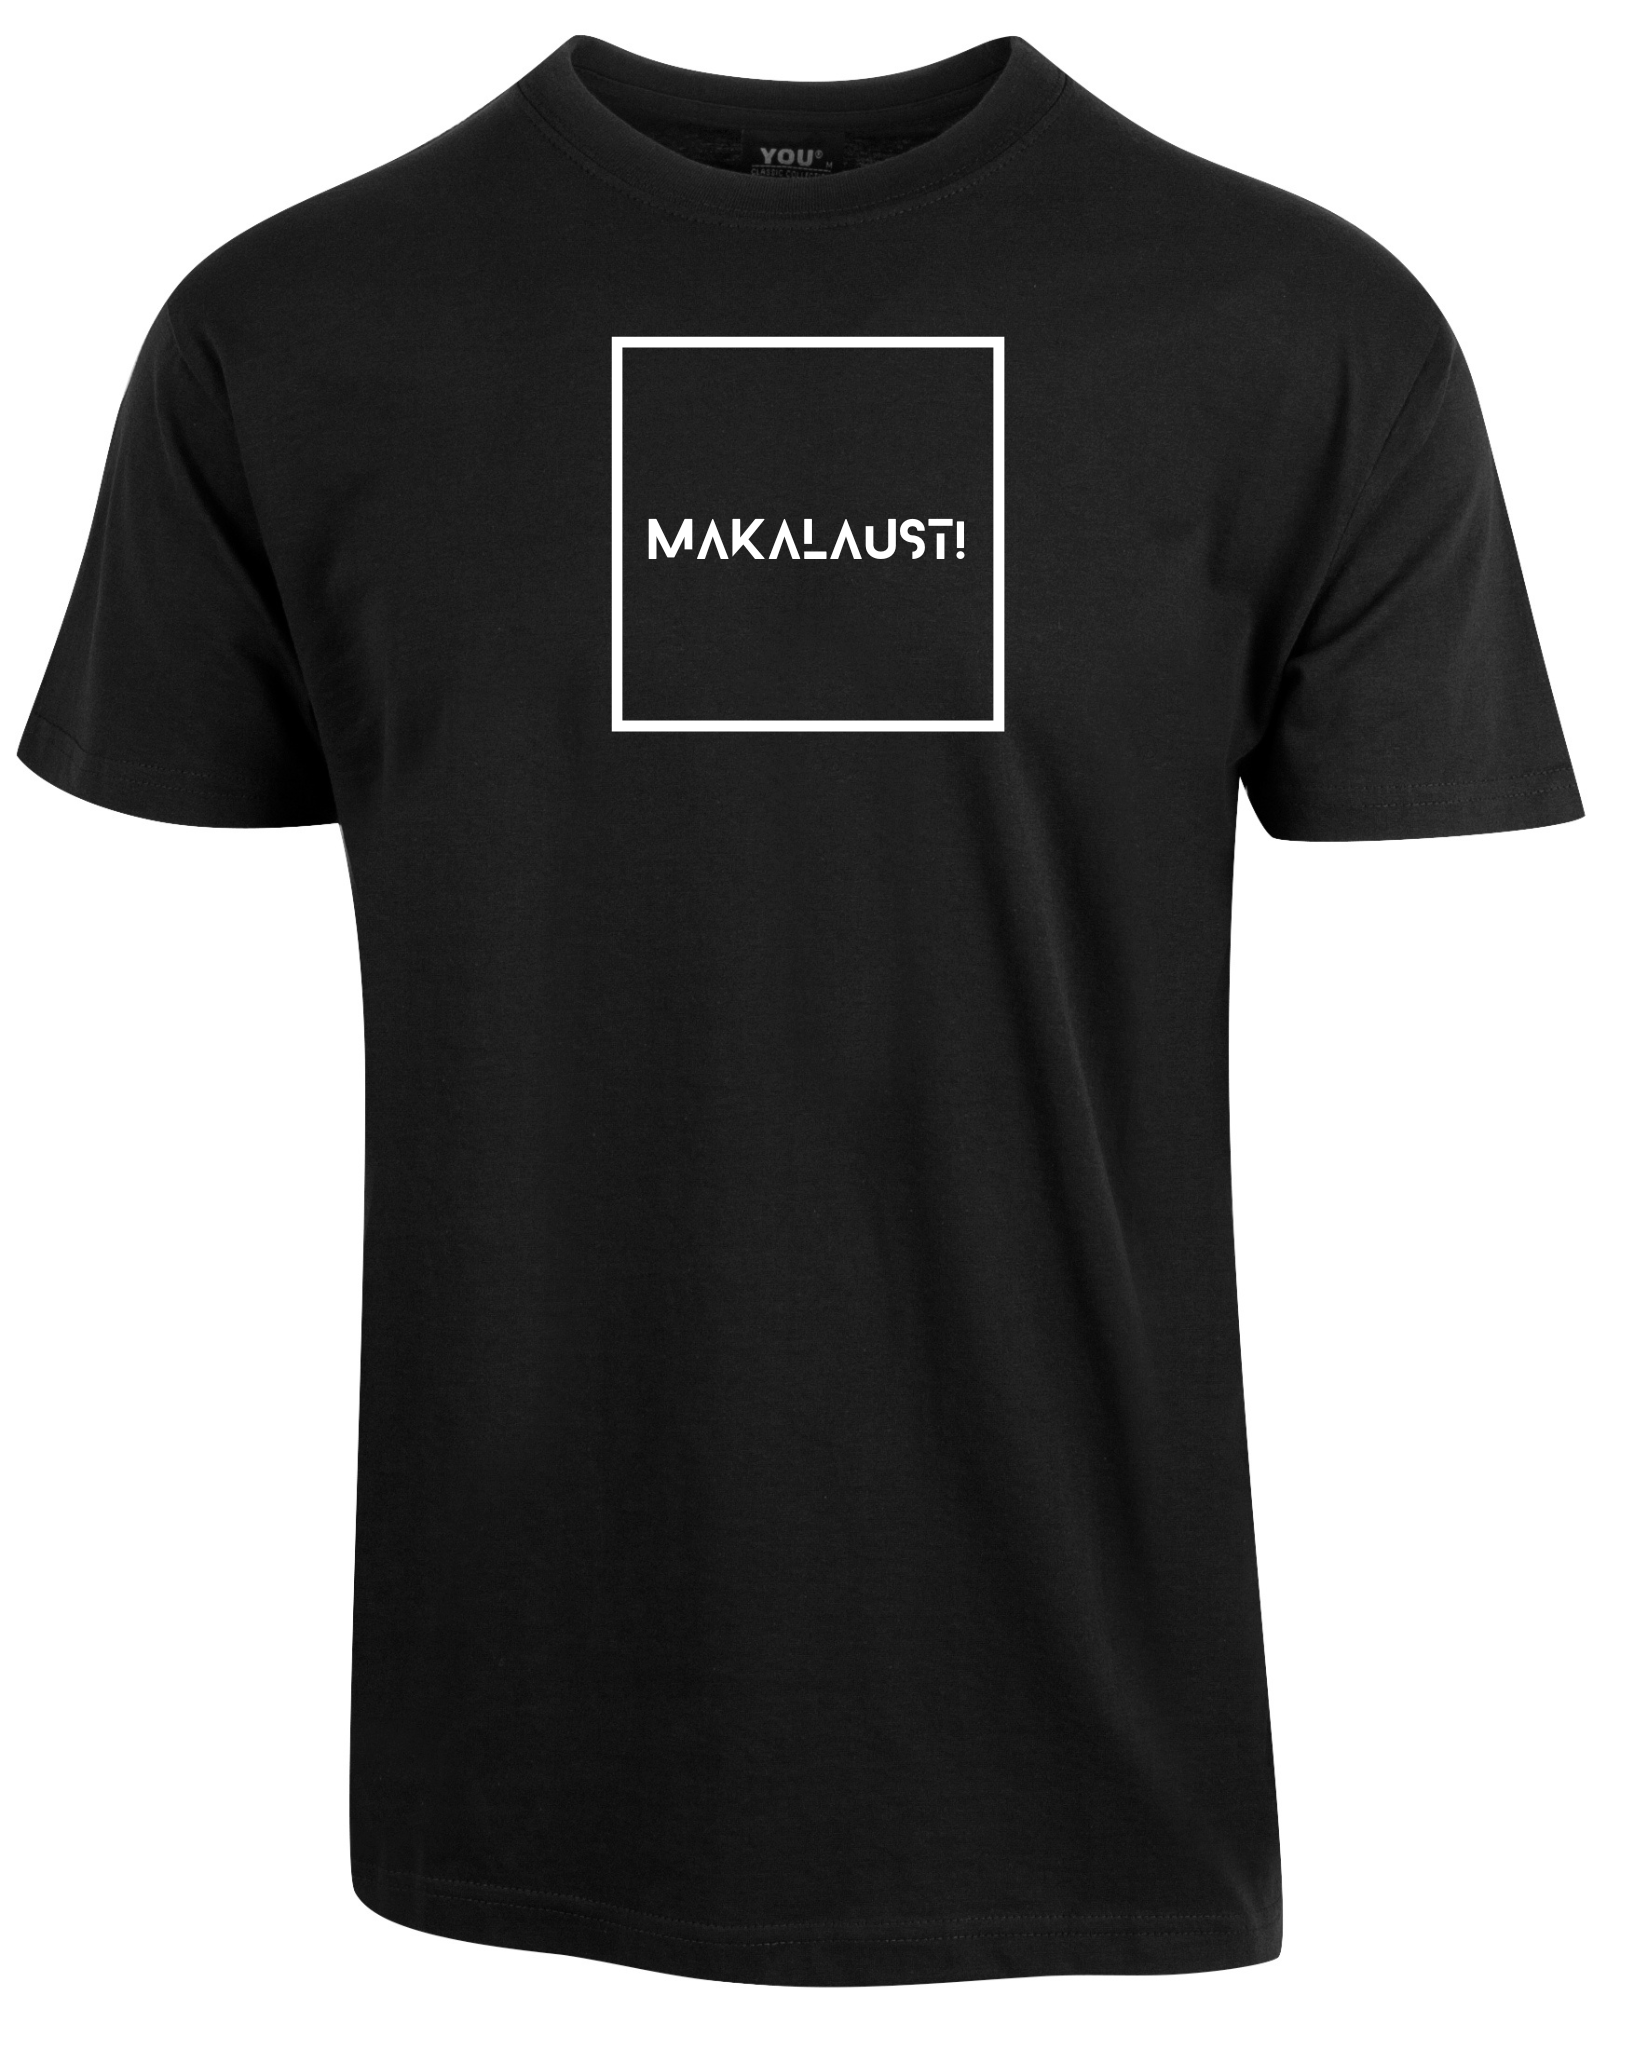 T-skjorte med teksten "Makalaust!"